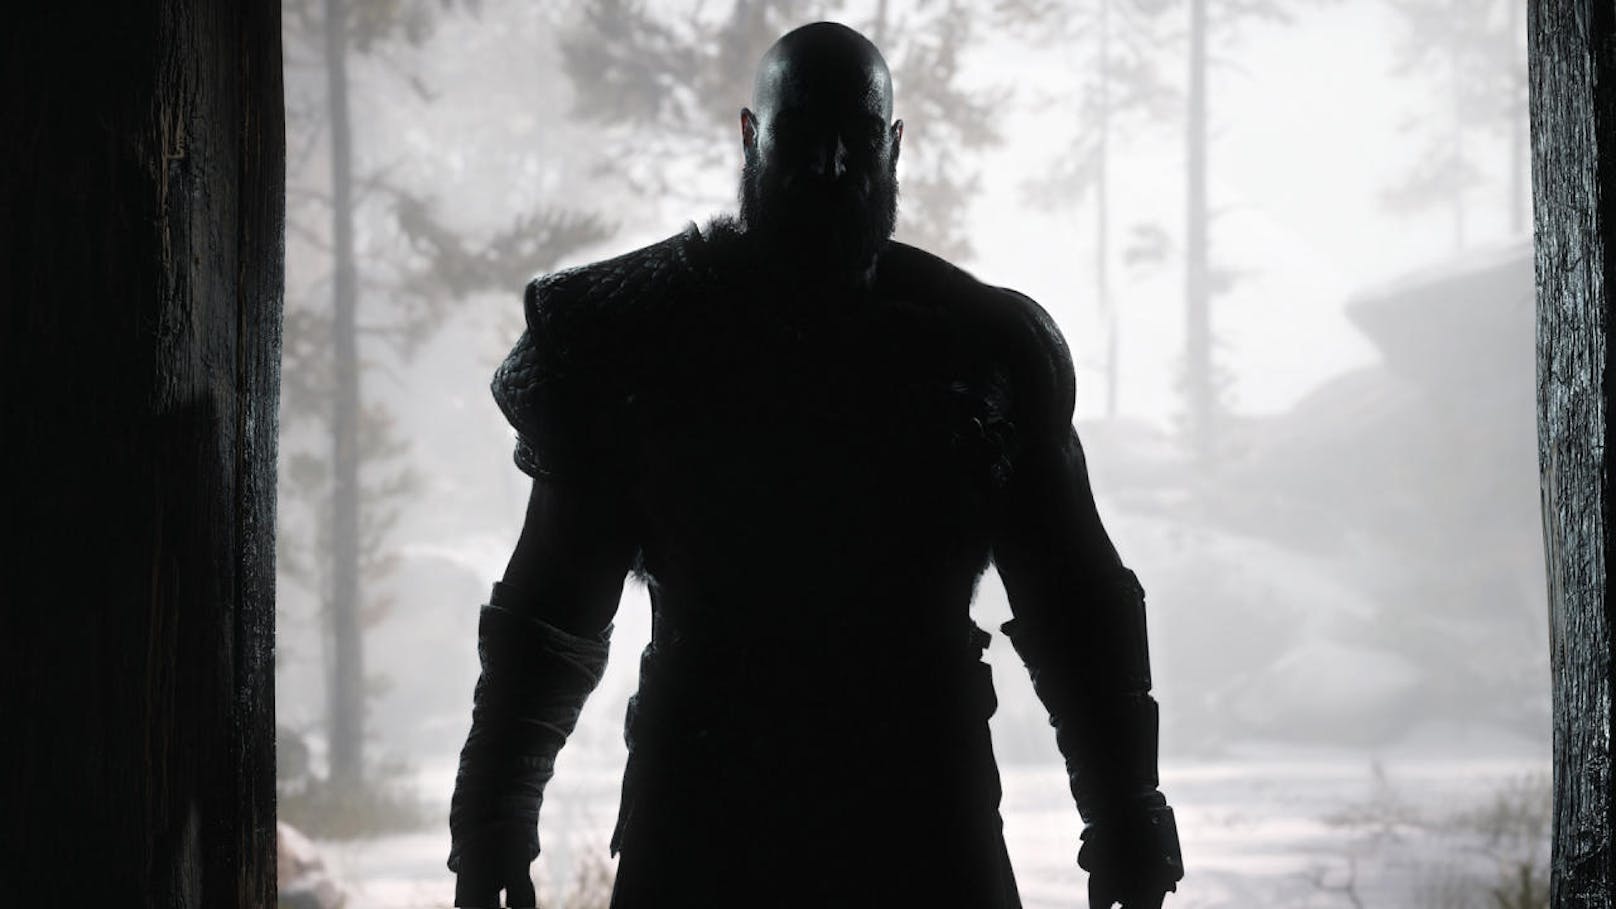 Kratos teilt weiterhin ordentlich aus, aber nun mit behäbigeren Schlägen - entweder mit bloßen Fäusten oder mit der Leviathan-Axt. Mit dieser hackt er wie besessen auf Gegner wie untote Draugare oder Trolle ein.